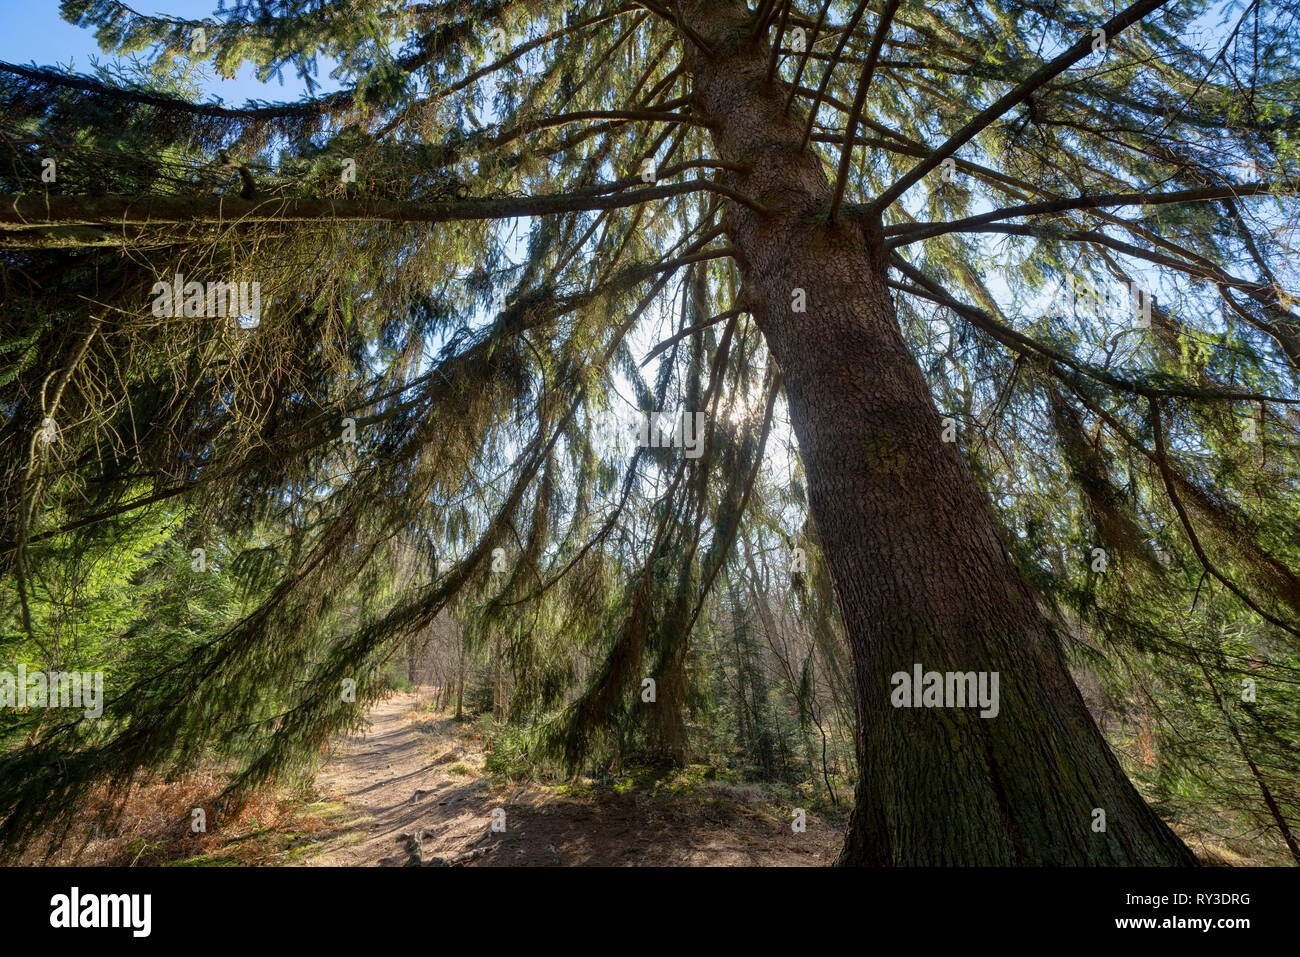 Spruce, Primeval forest Urwald Sababurg, Hofgeismar, Weser Uplands, Weserbergland, Hesse, Germany Stock Photo